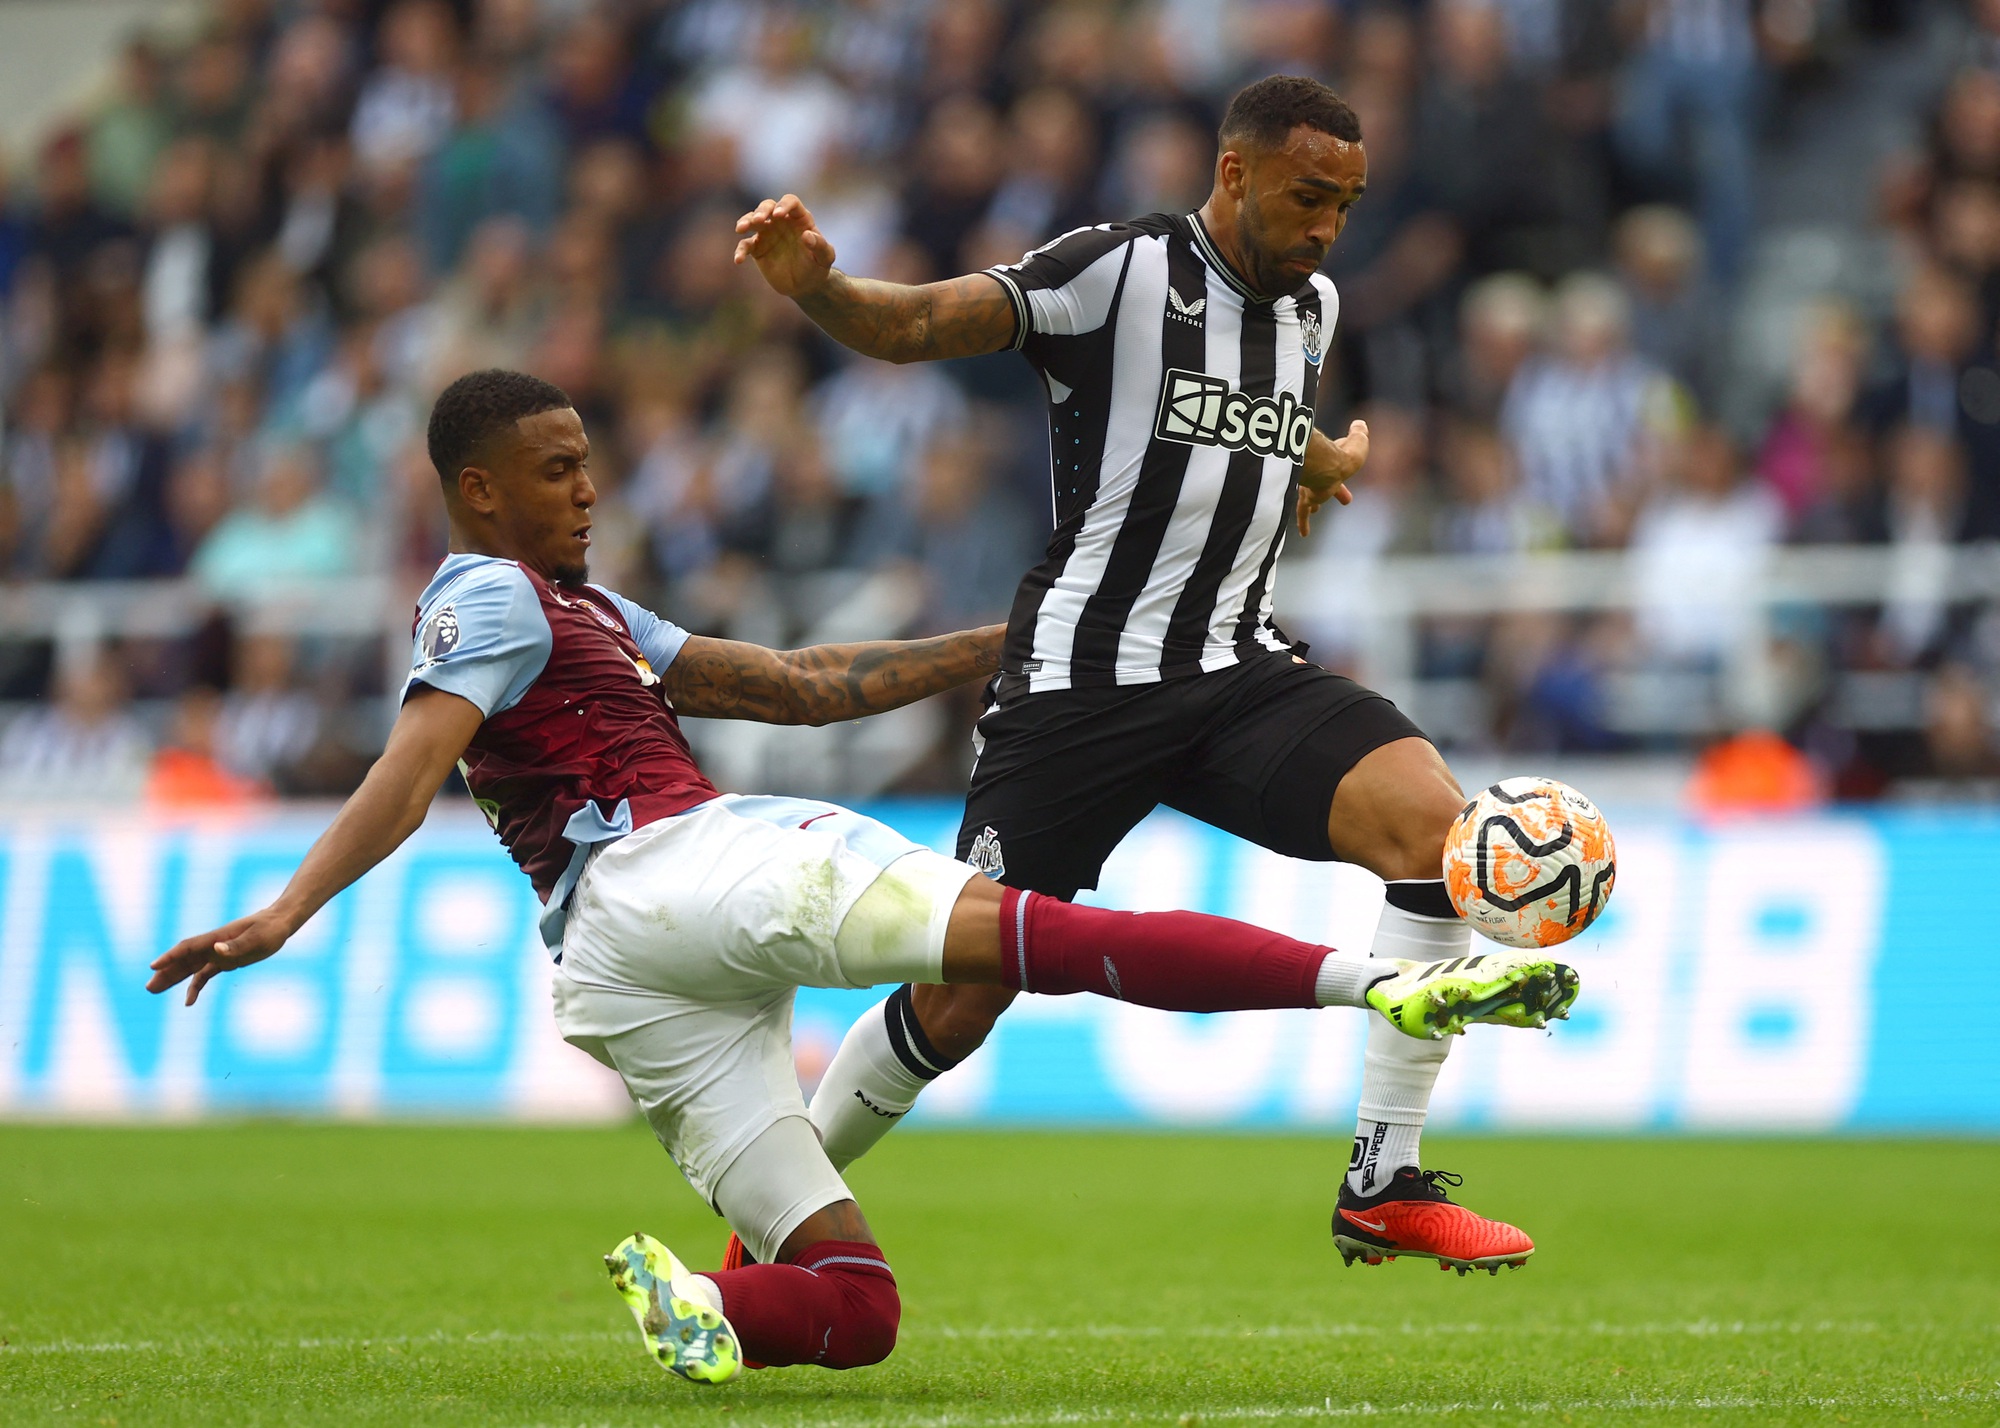 Hạ Aston Villa trận cầu 6 bàn, Newcastle giành ngôi đầu Ngoại hạng - Ảnh 3.